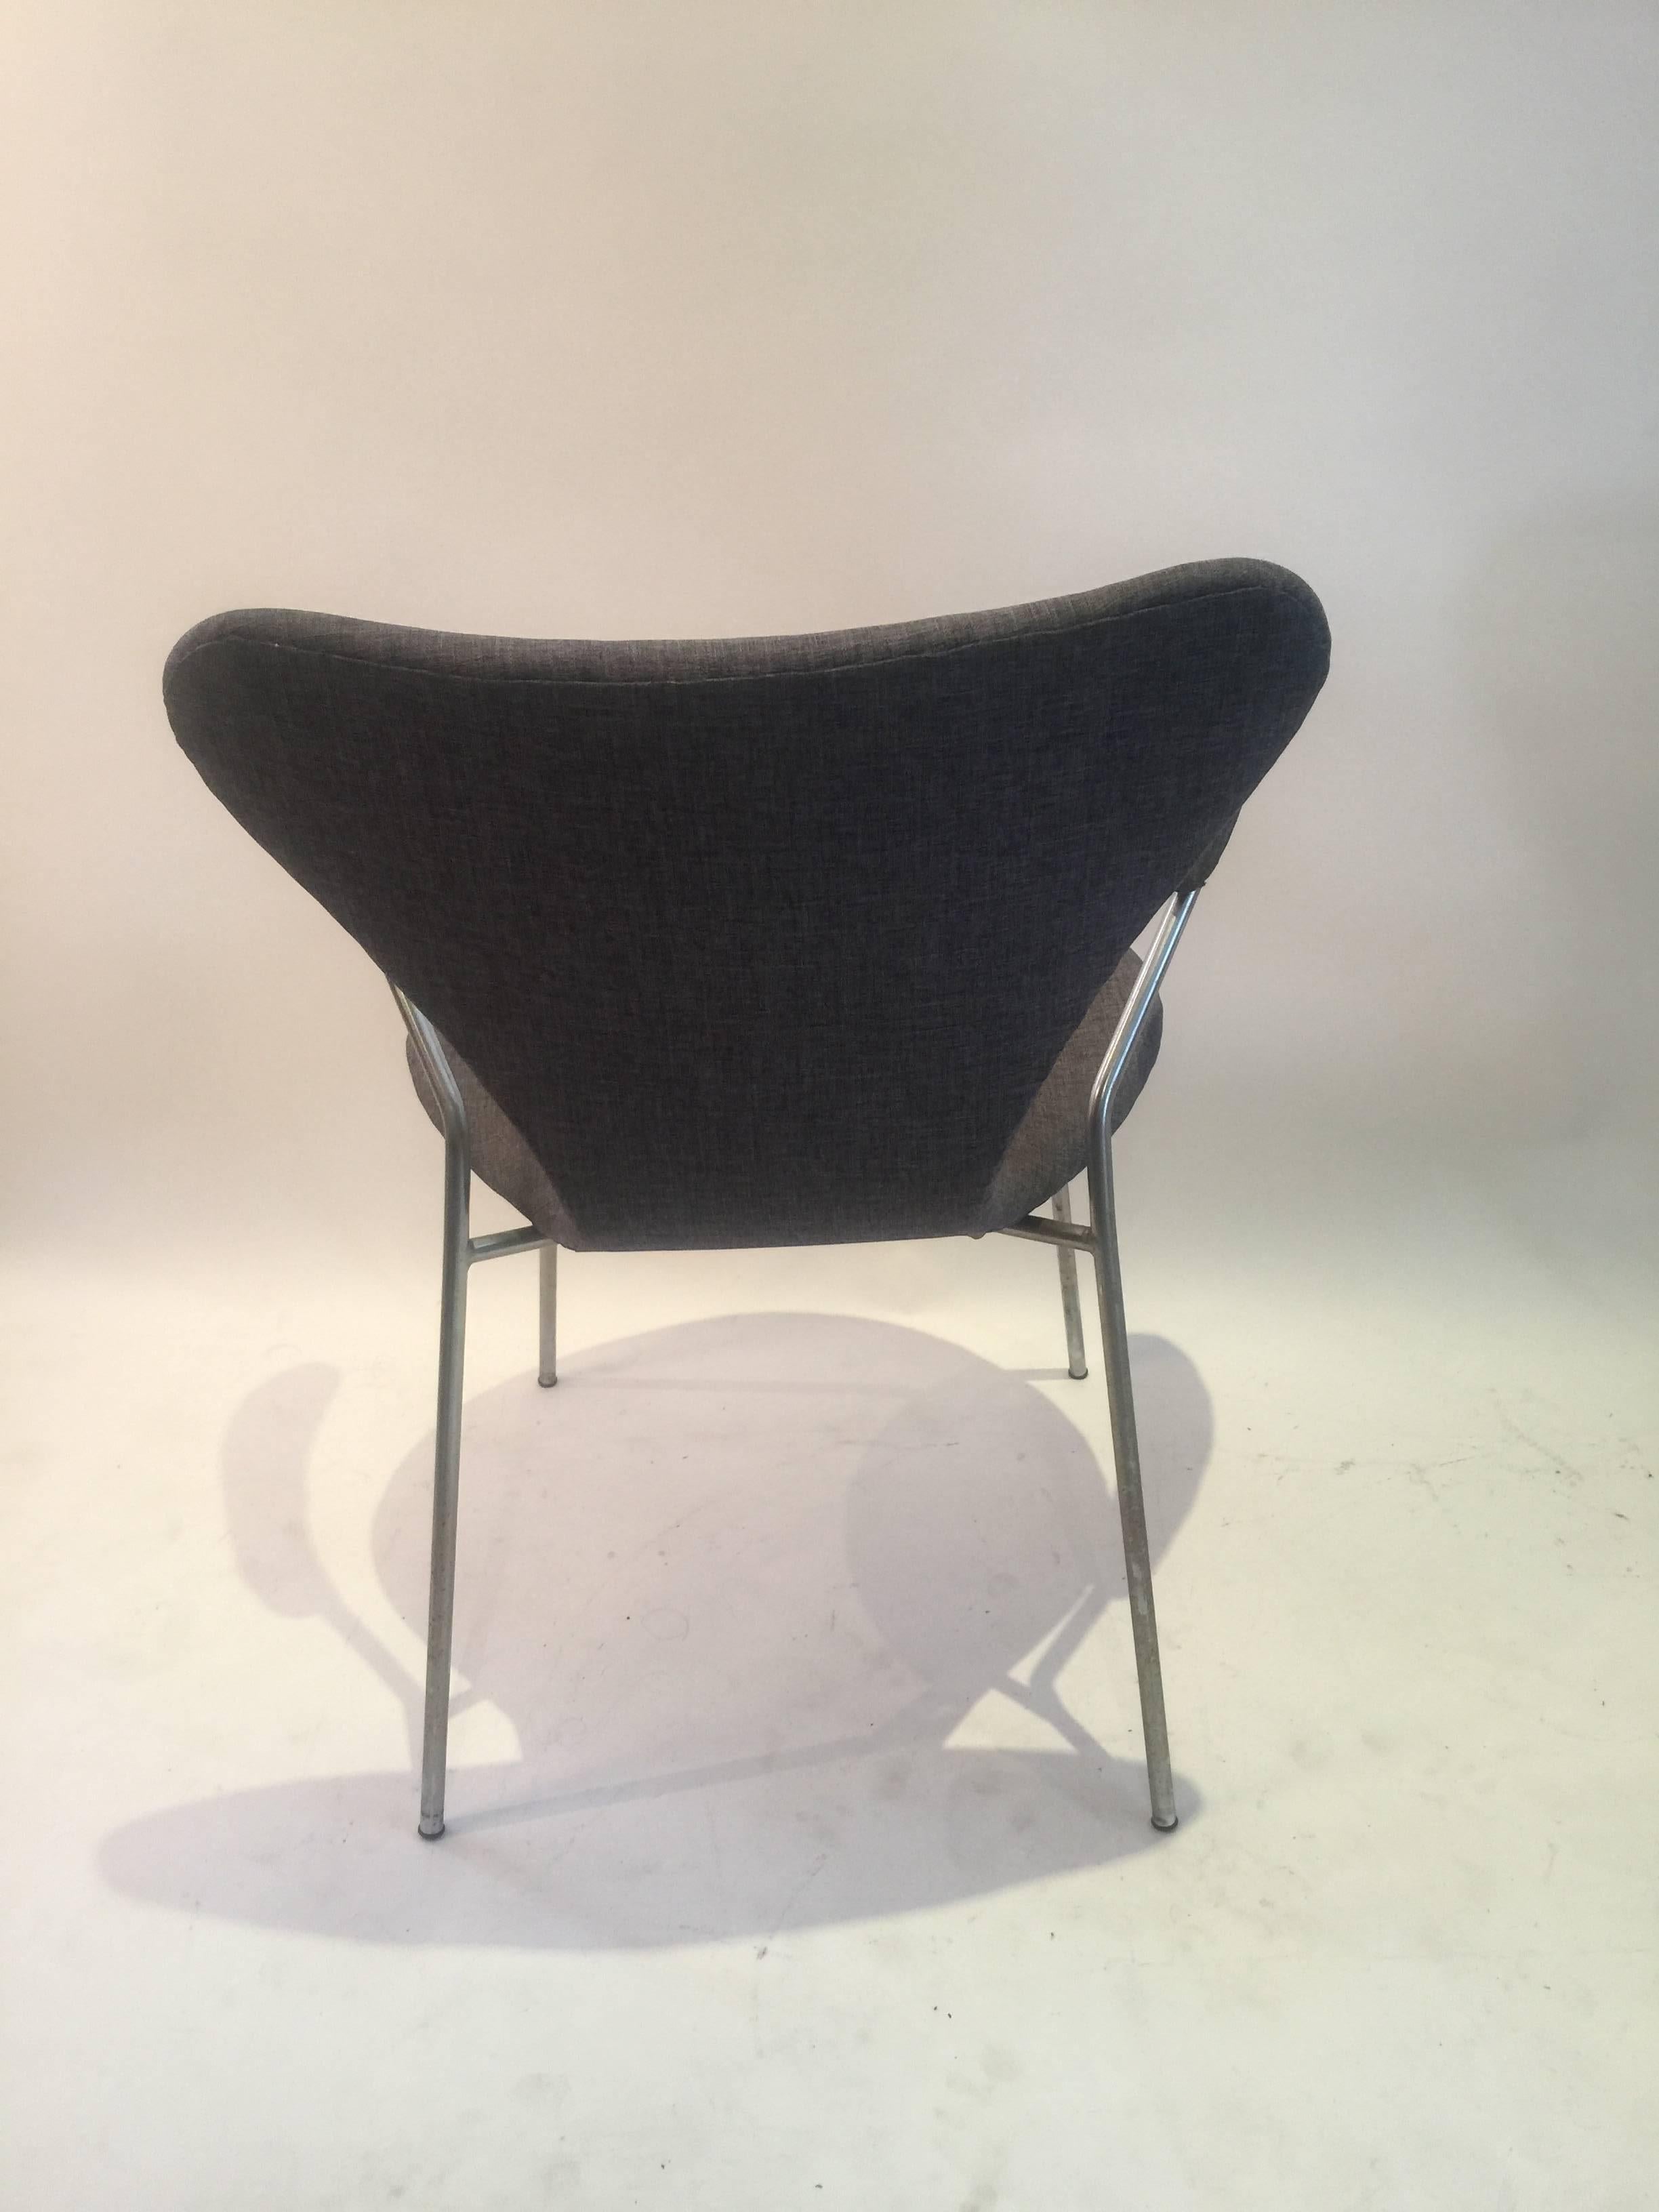 Molded Arne Jacobsen for Fritz Hansen Series 7 Armchair in Grey Fabric